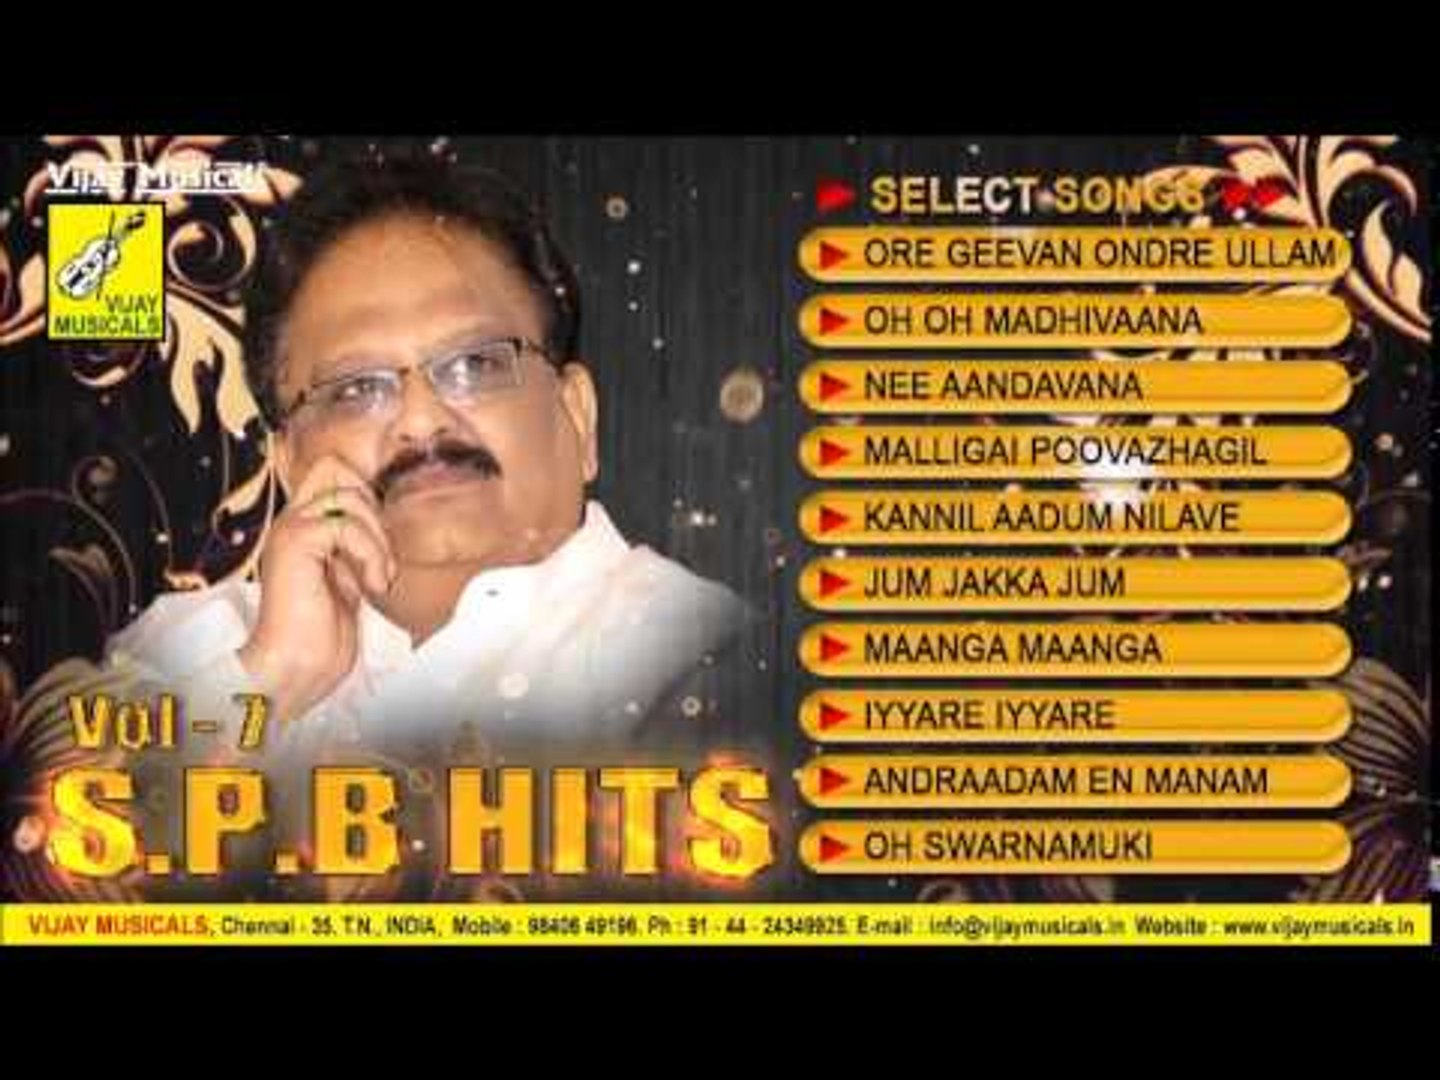 spb hit songs in tamil